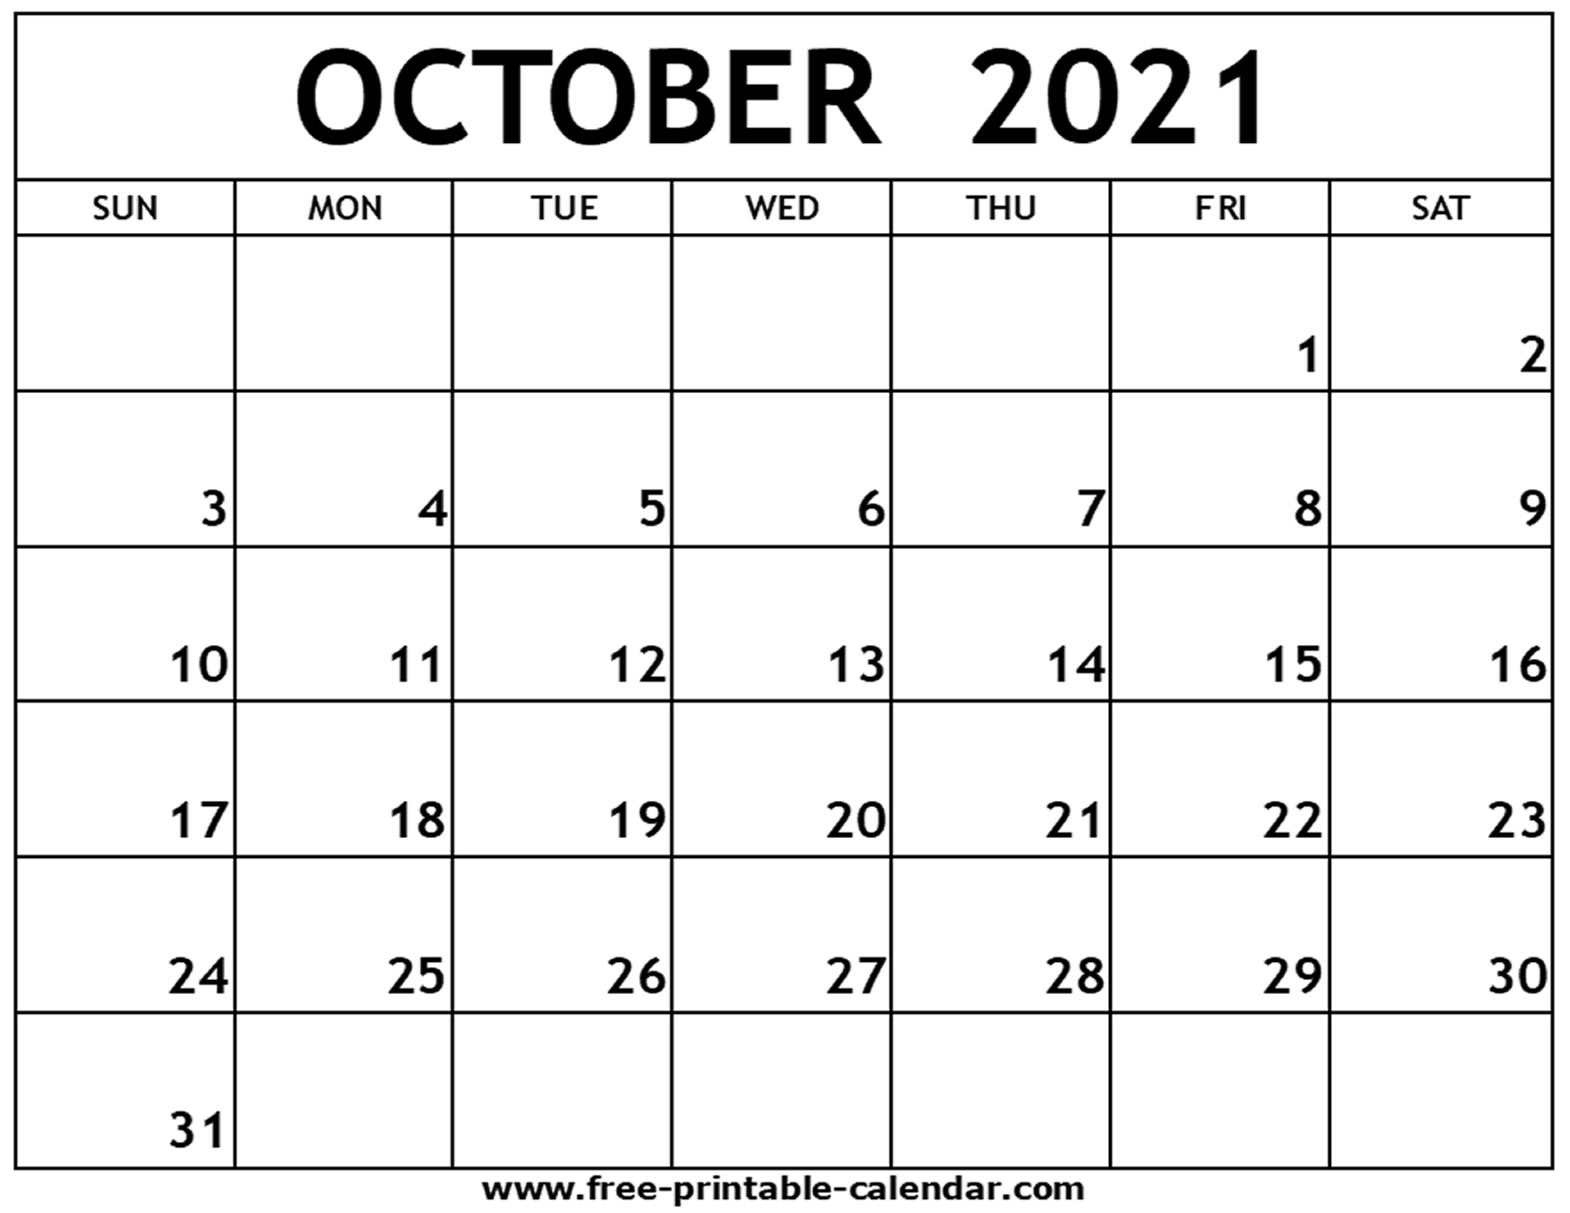 Fiscal Calendar For October 2021 | Calendar Printables Free Blank 2021 Calendar Of October